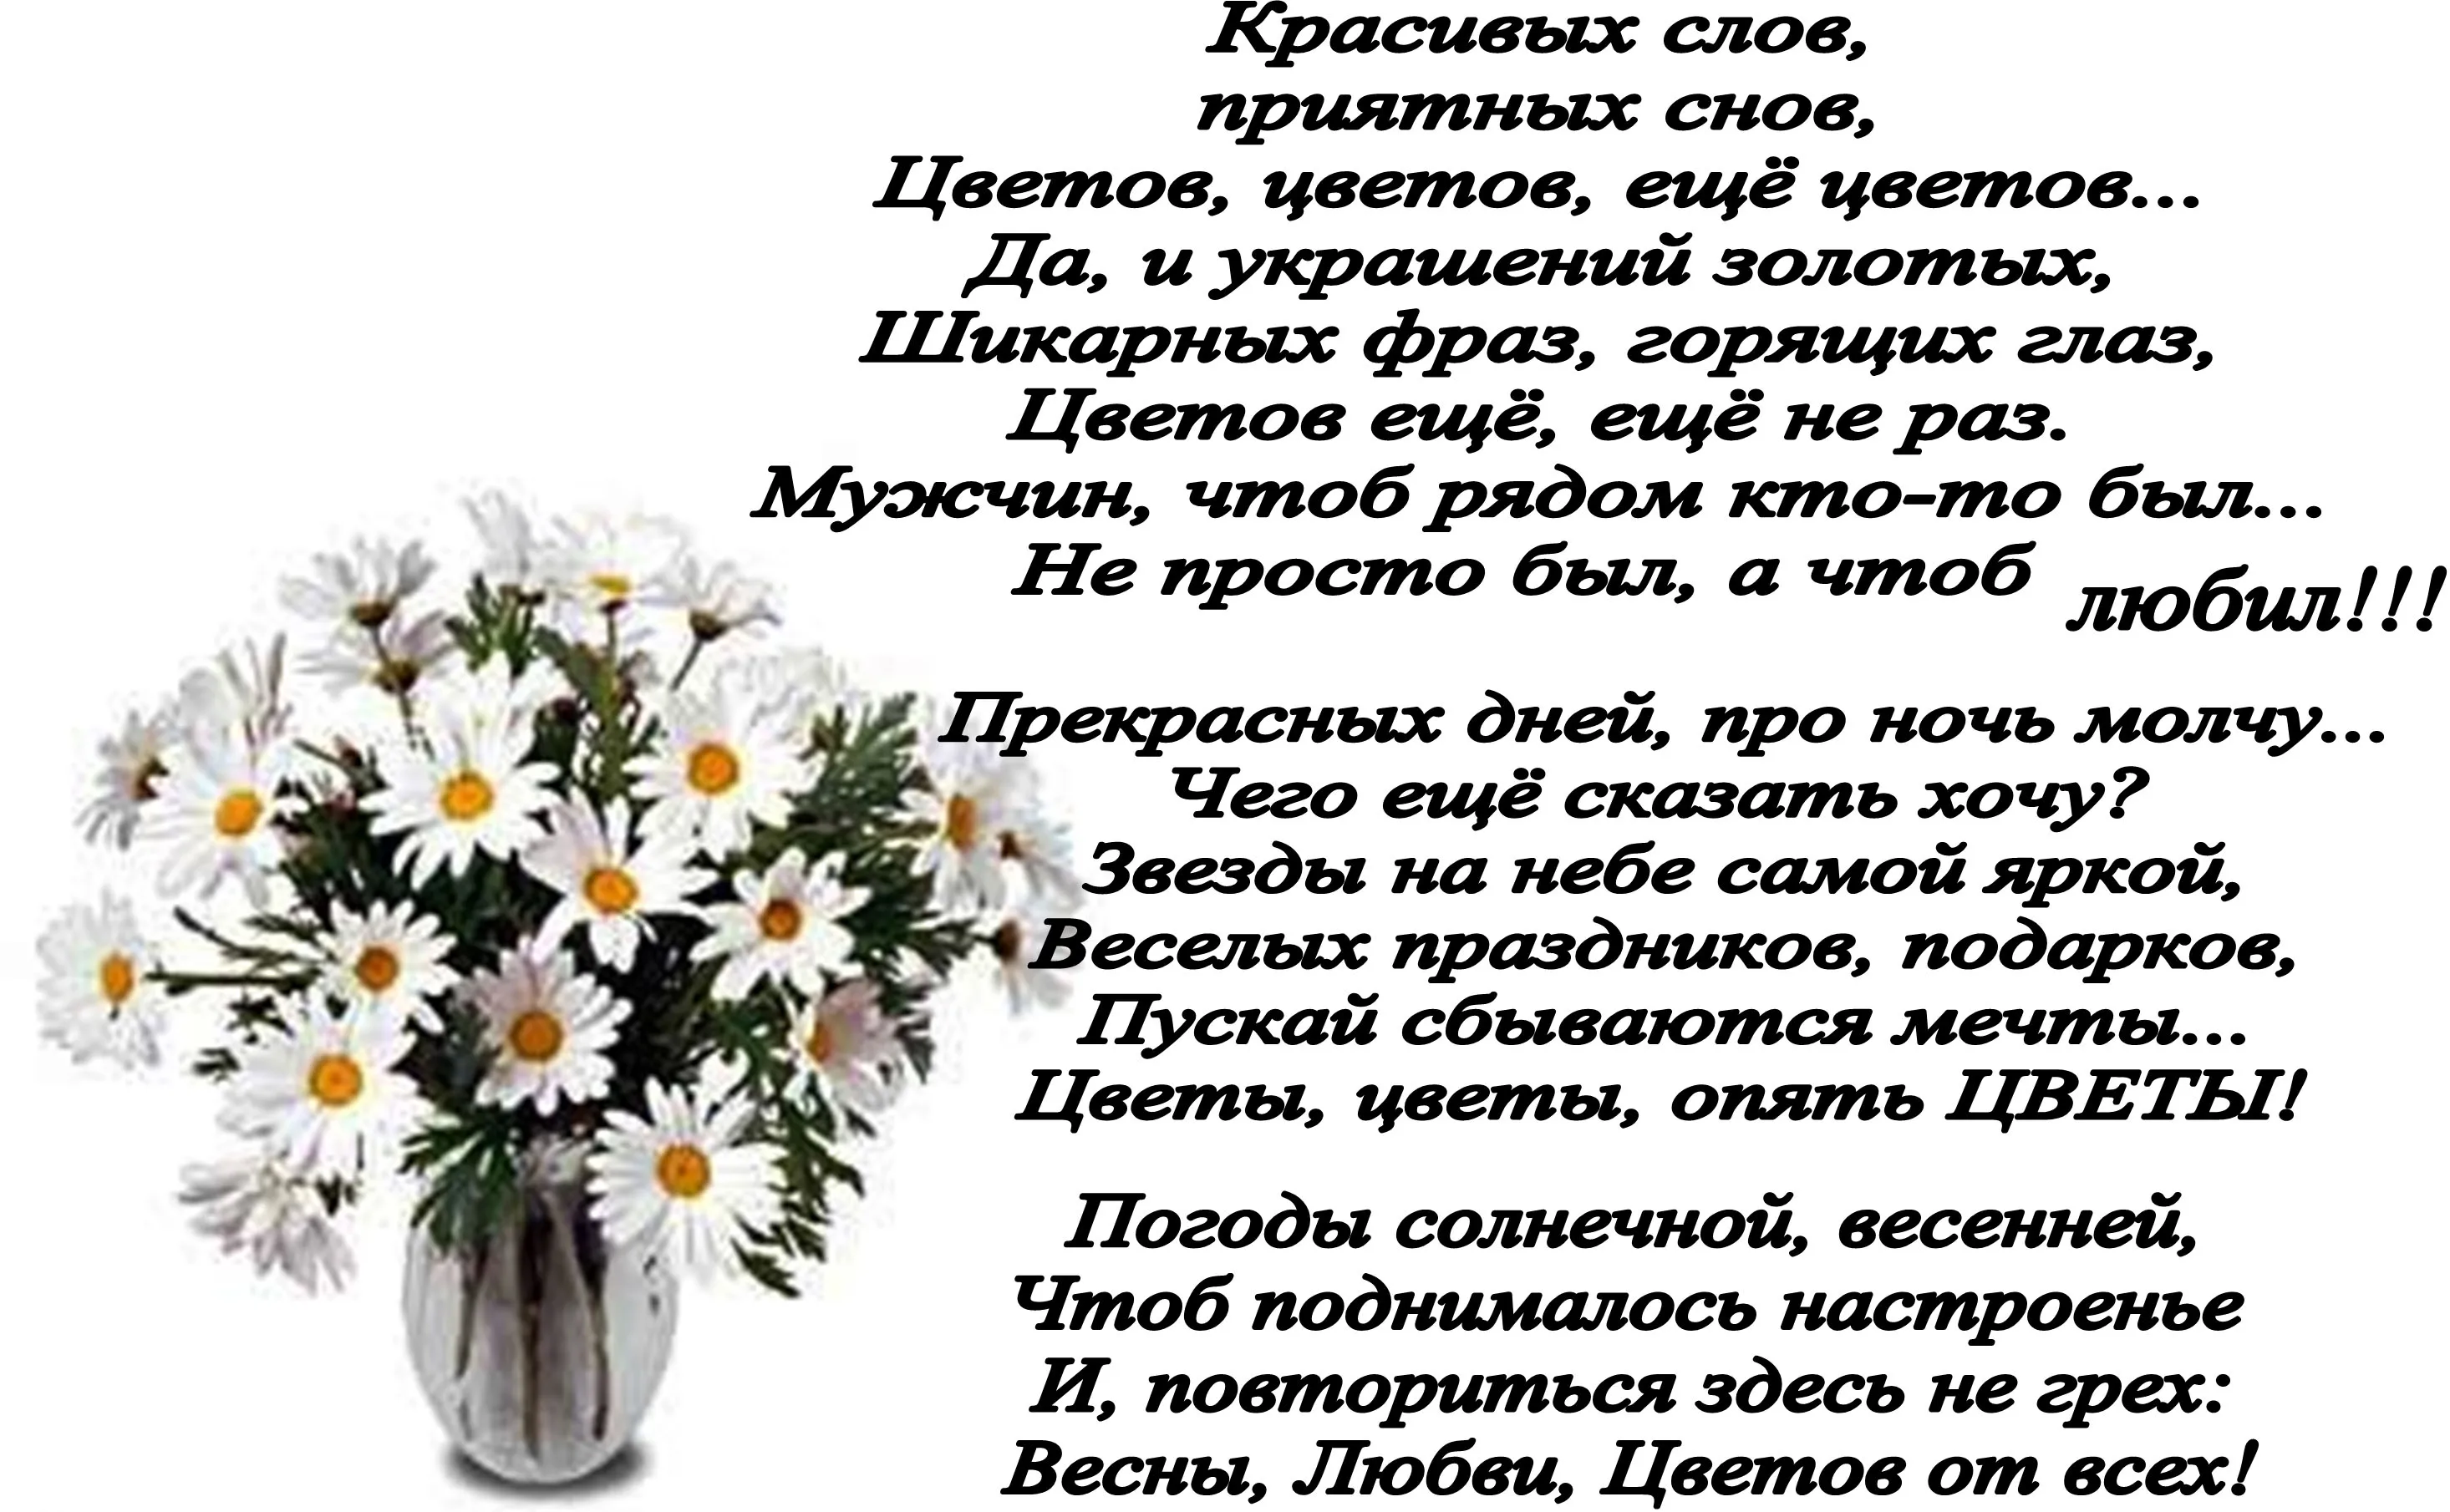 Цветов цветов еще цветов. Стихи про цветы. Стихи к подарку цветы в горшке. Красивое слово подарок. Слова к подарку цветок в горшке.